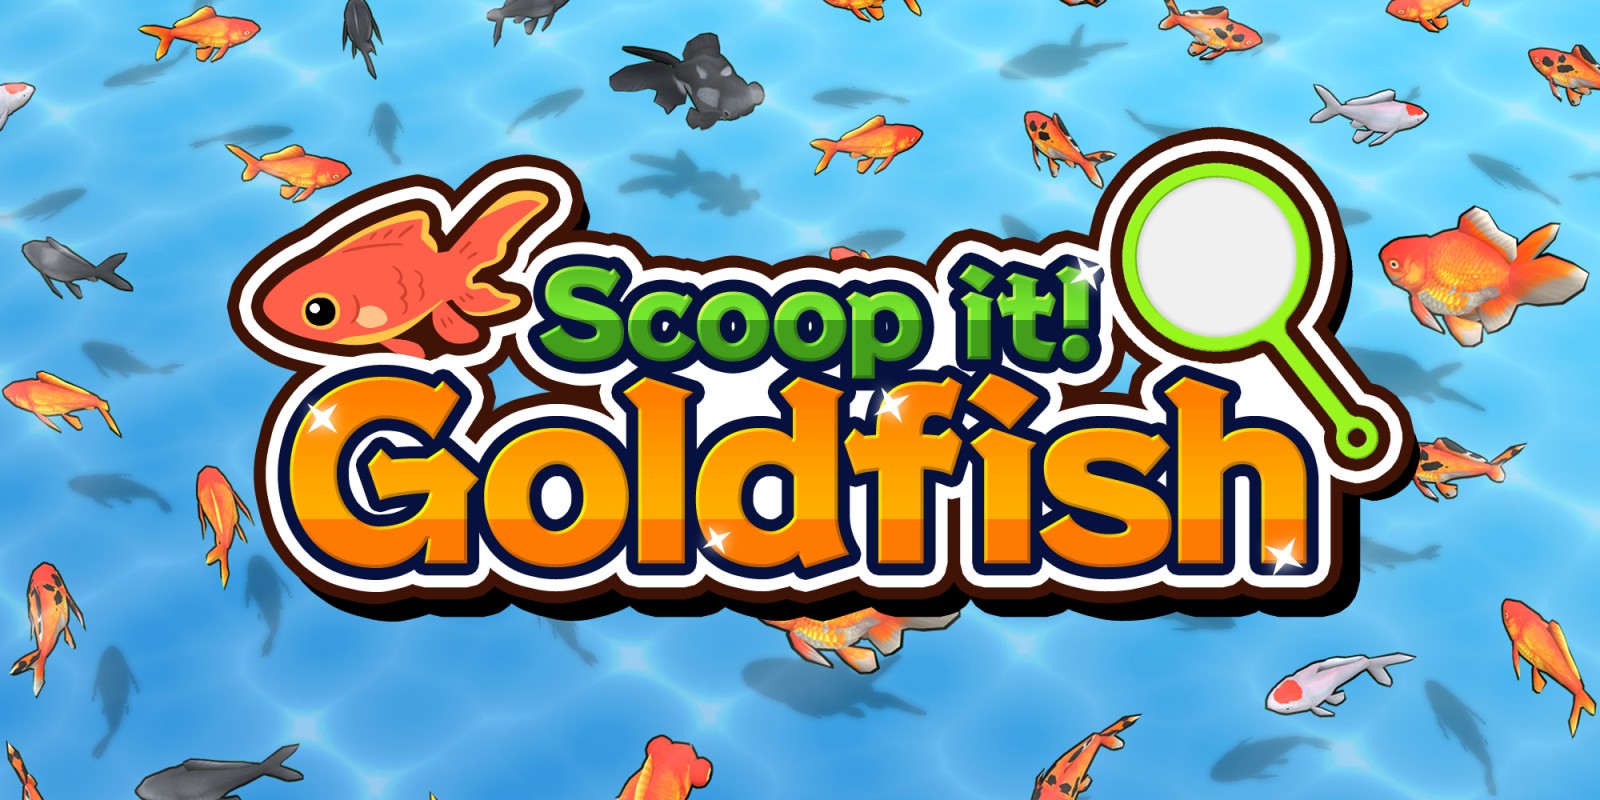 Scoop it! Goldfish